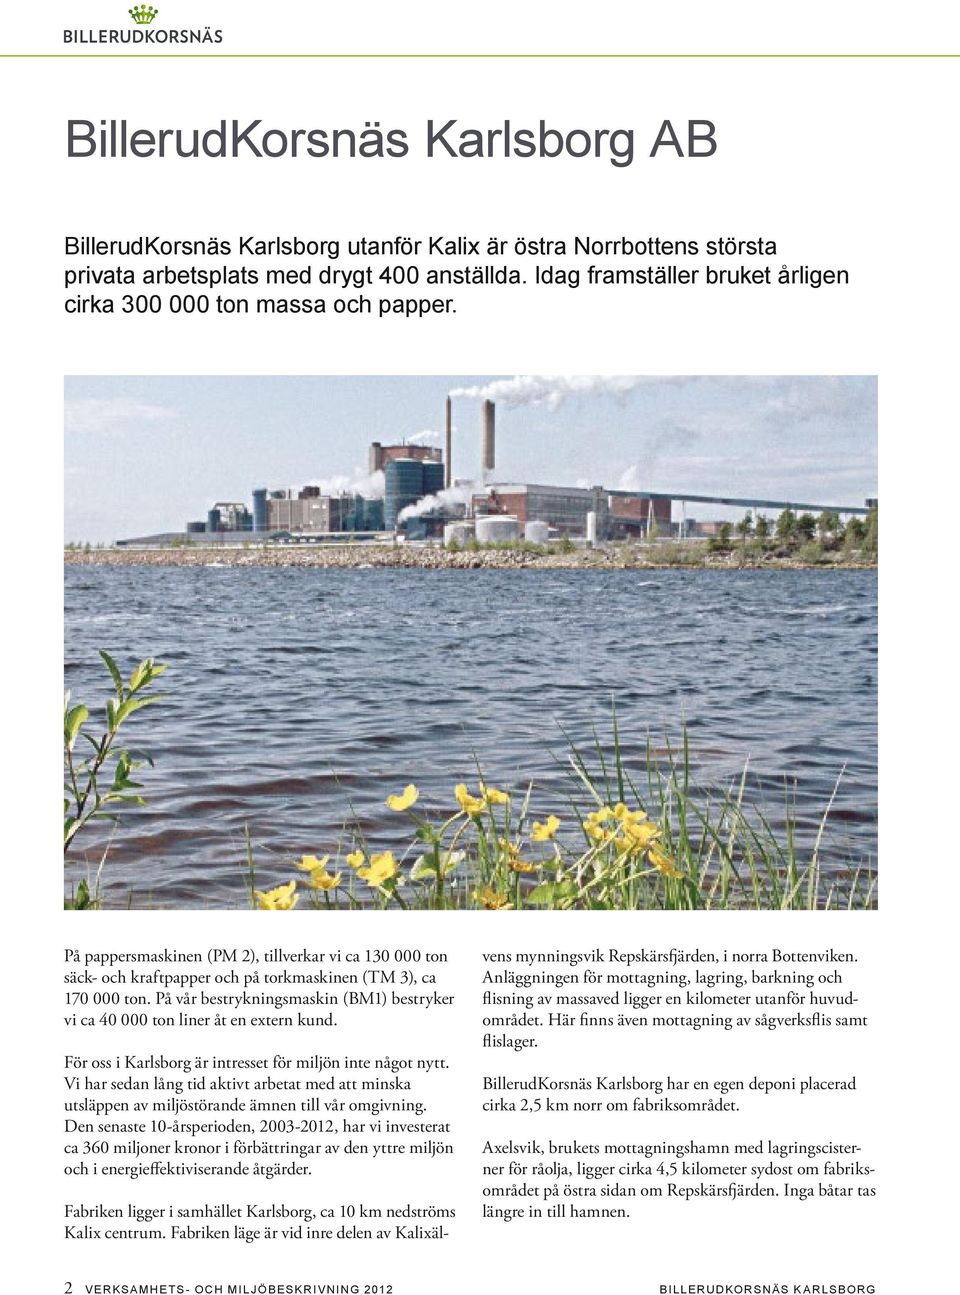 På vår bestrykningsmaskin (BM1) bestryker vi ca 40 000 ton liner åt en extern kund. För oss i Karlsborg är intresset för miljön inte något nytt.